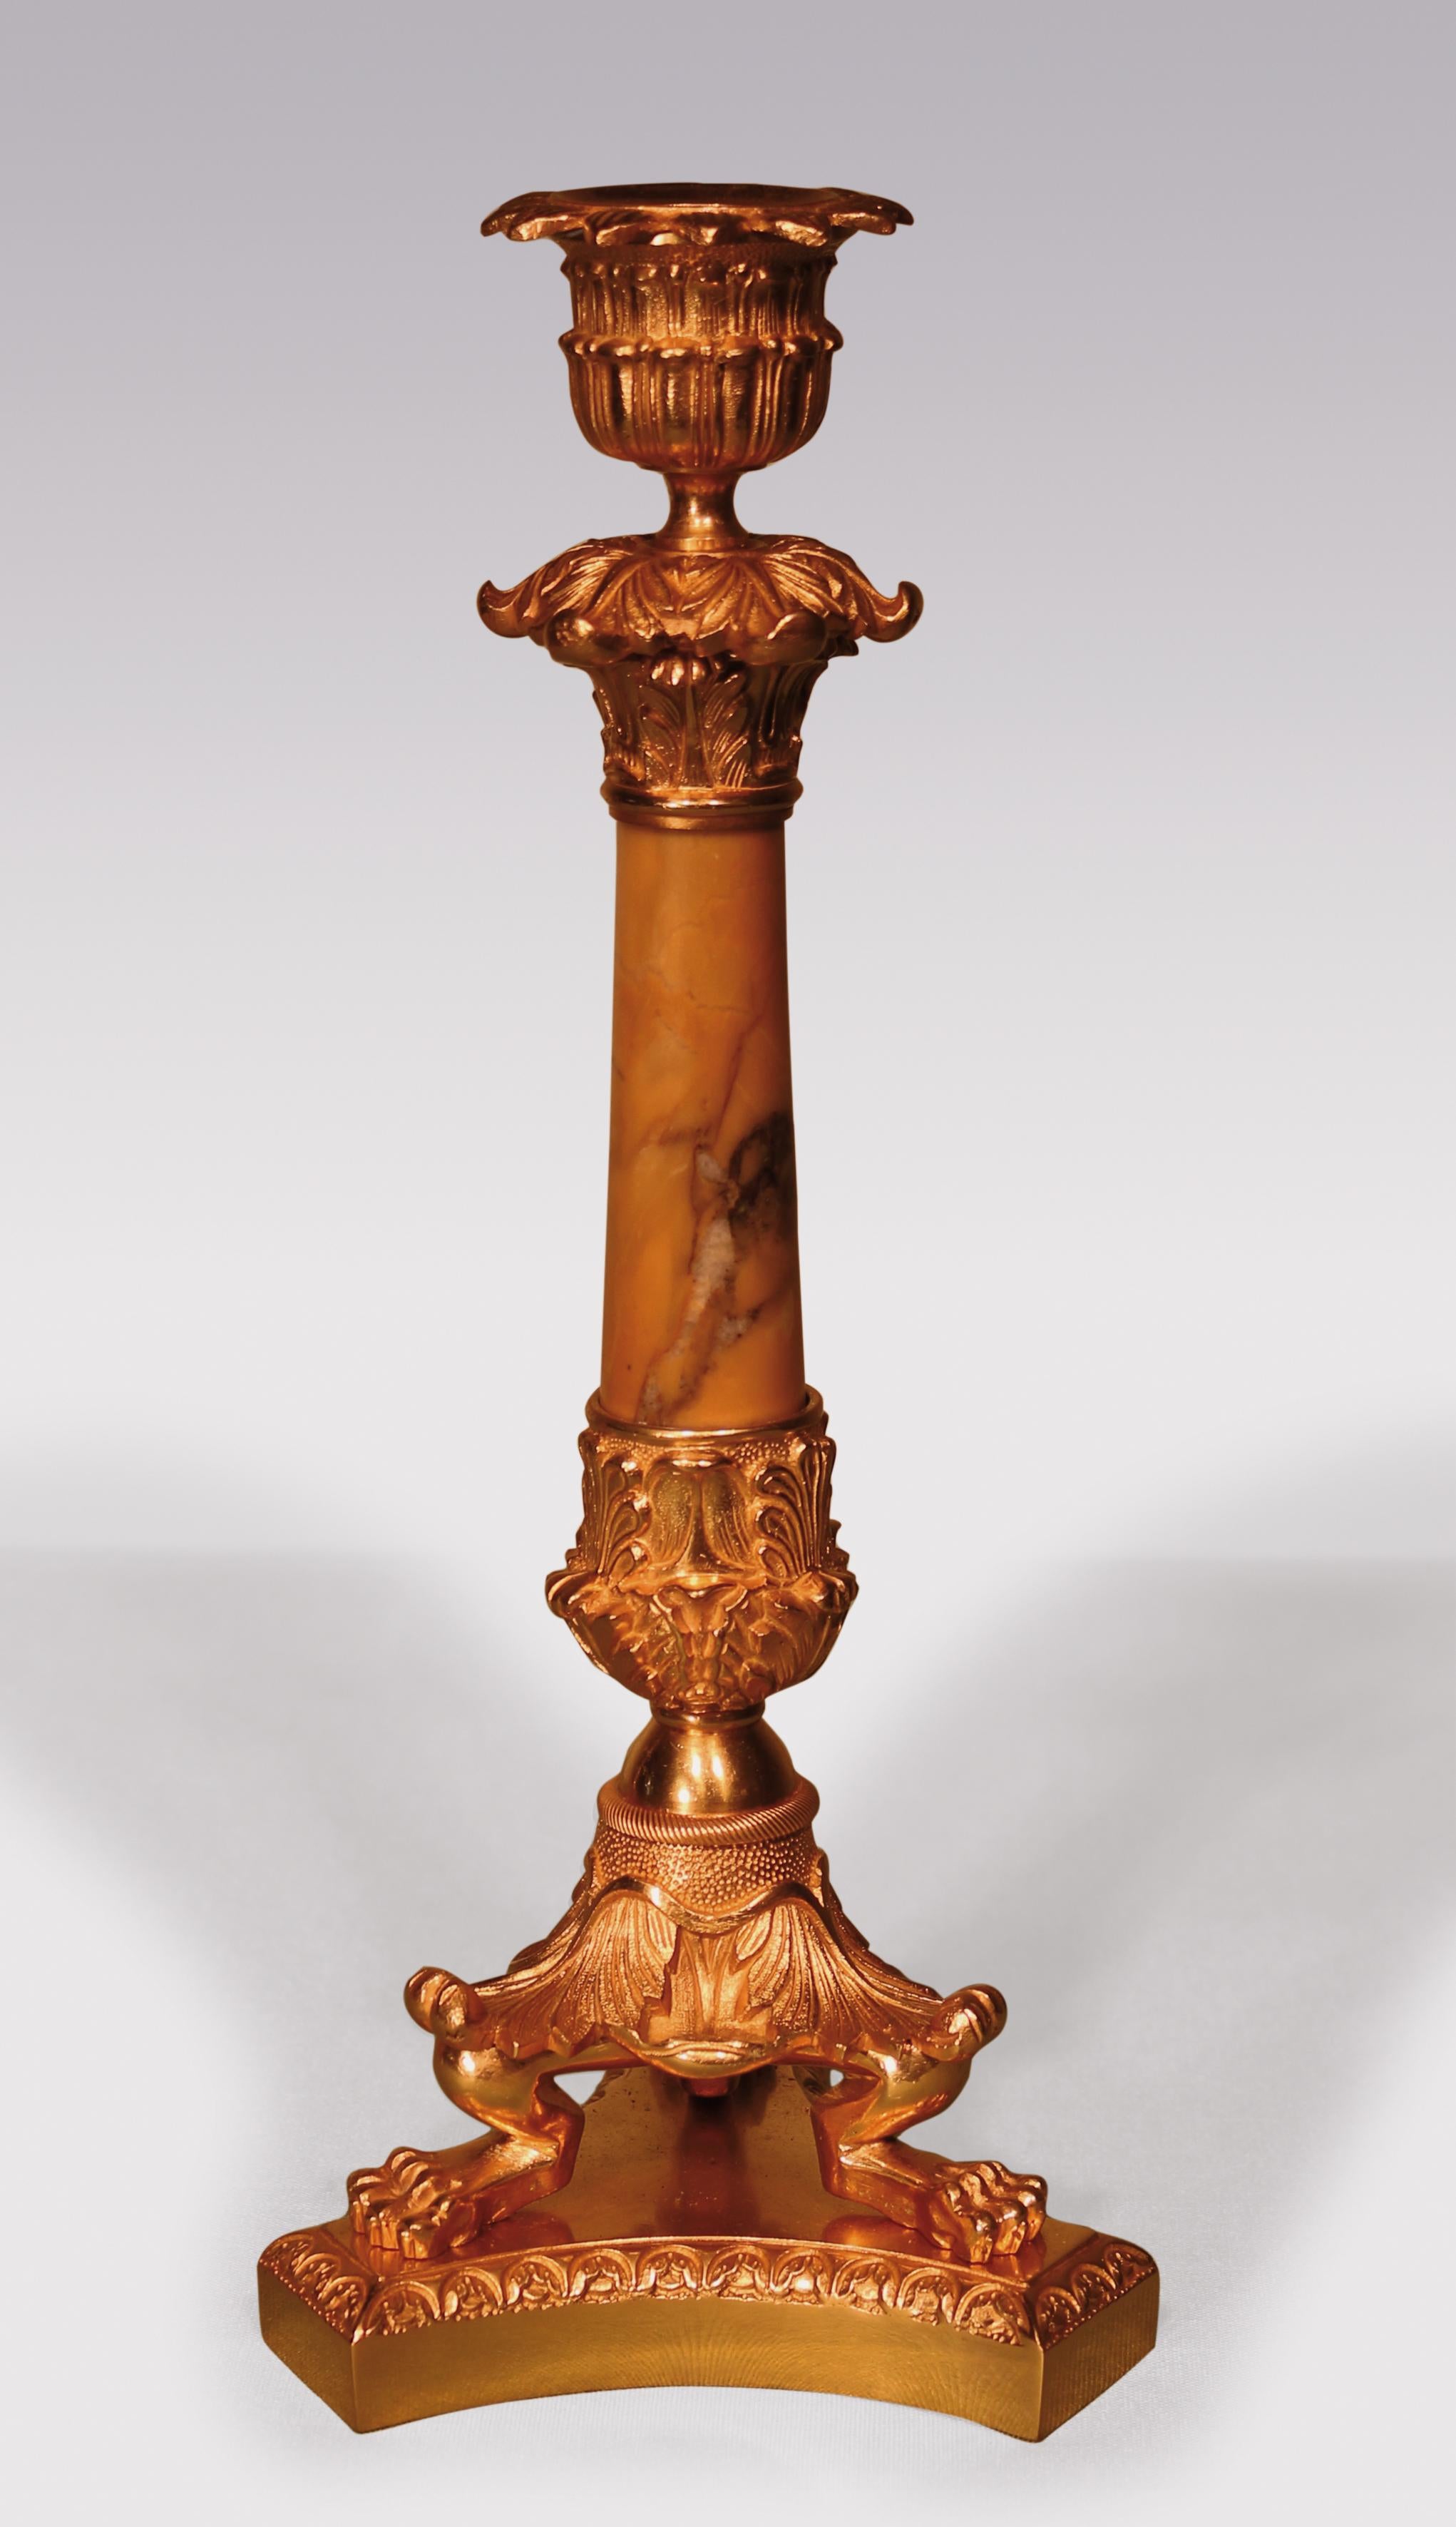 Ein Paar Ormolu-Kerzenleuchter aus dem frühen 19. Jahrhundert, mit doppelten blattverzierten Leuchtern über spitz zulaufenden Stielen aus Siena-Marmor, die auf dreiförmigen Füßen mit Akanthusblättern und Löwentatzen stehen und auf konkaven Basen